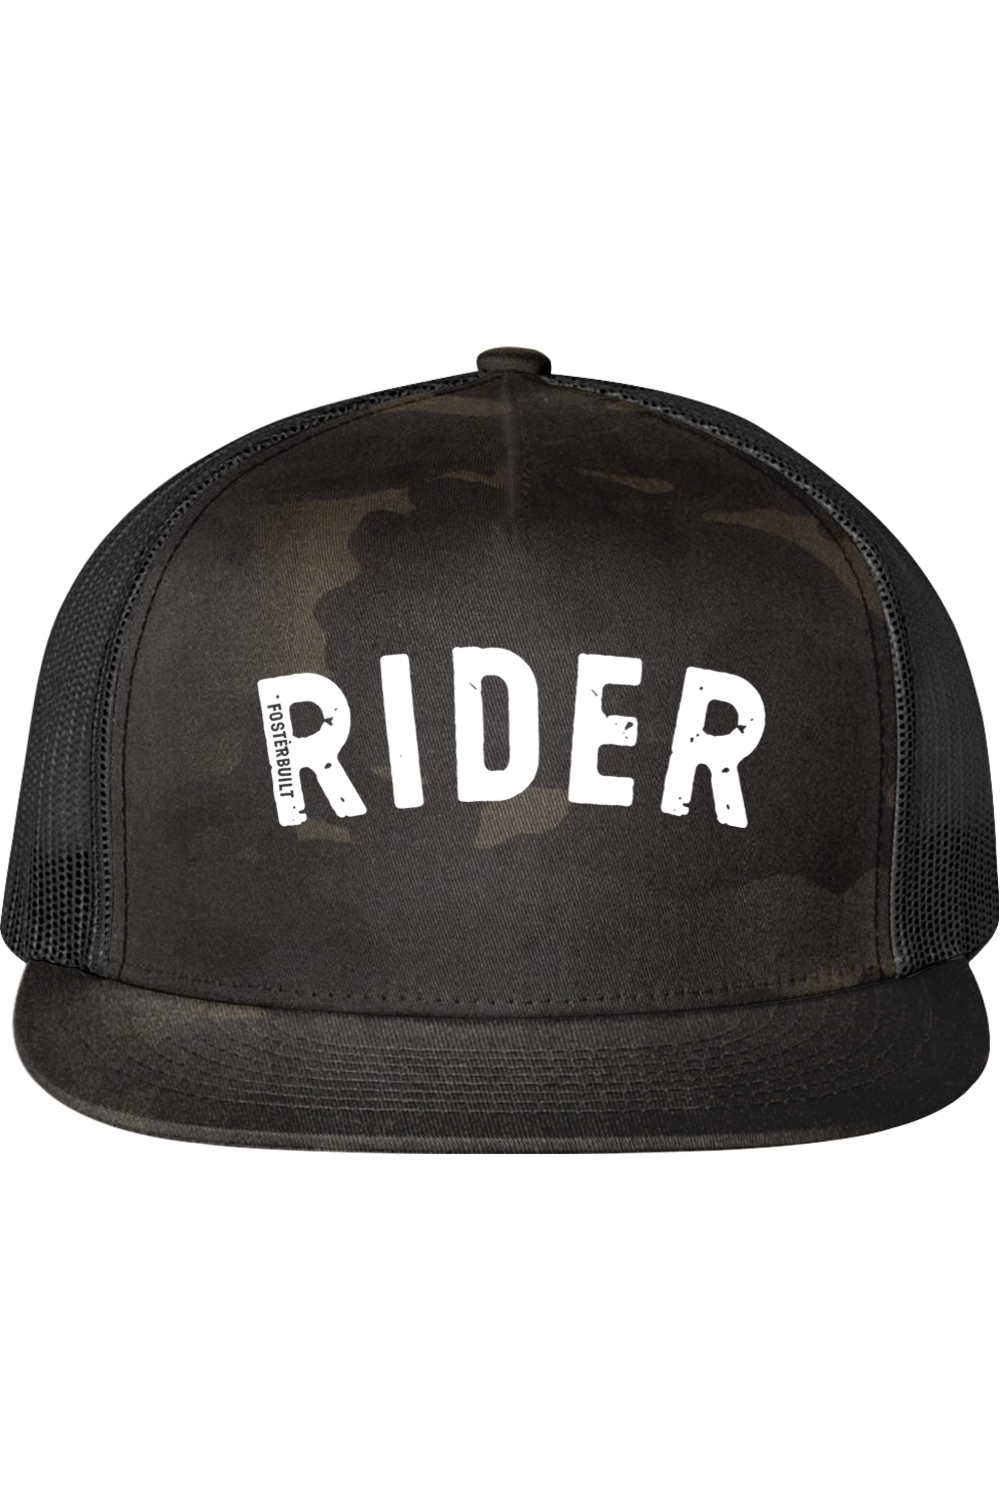 RIDER - Trucker Cap